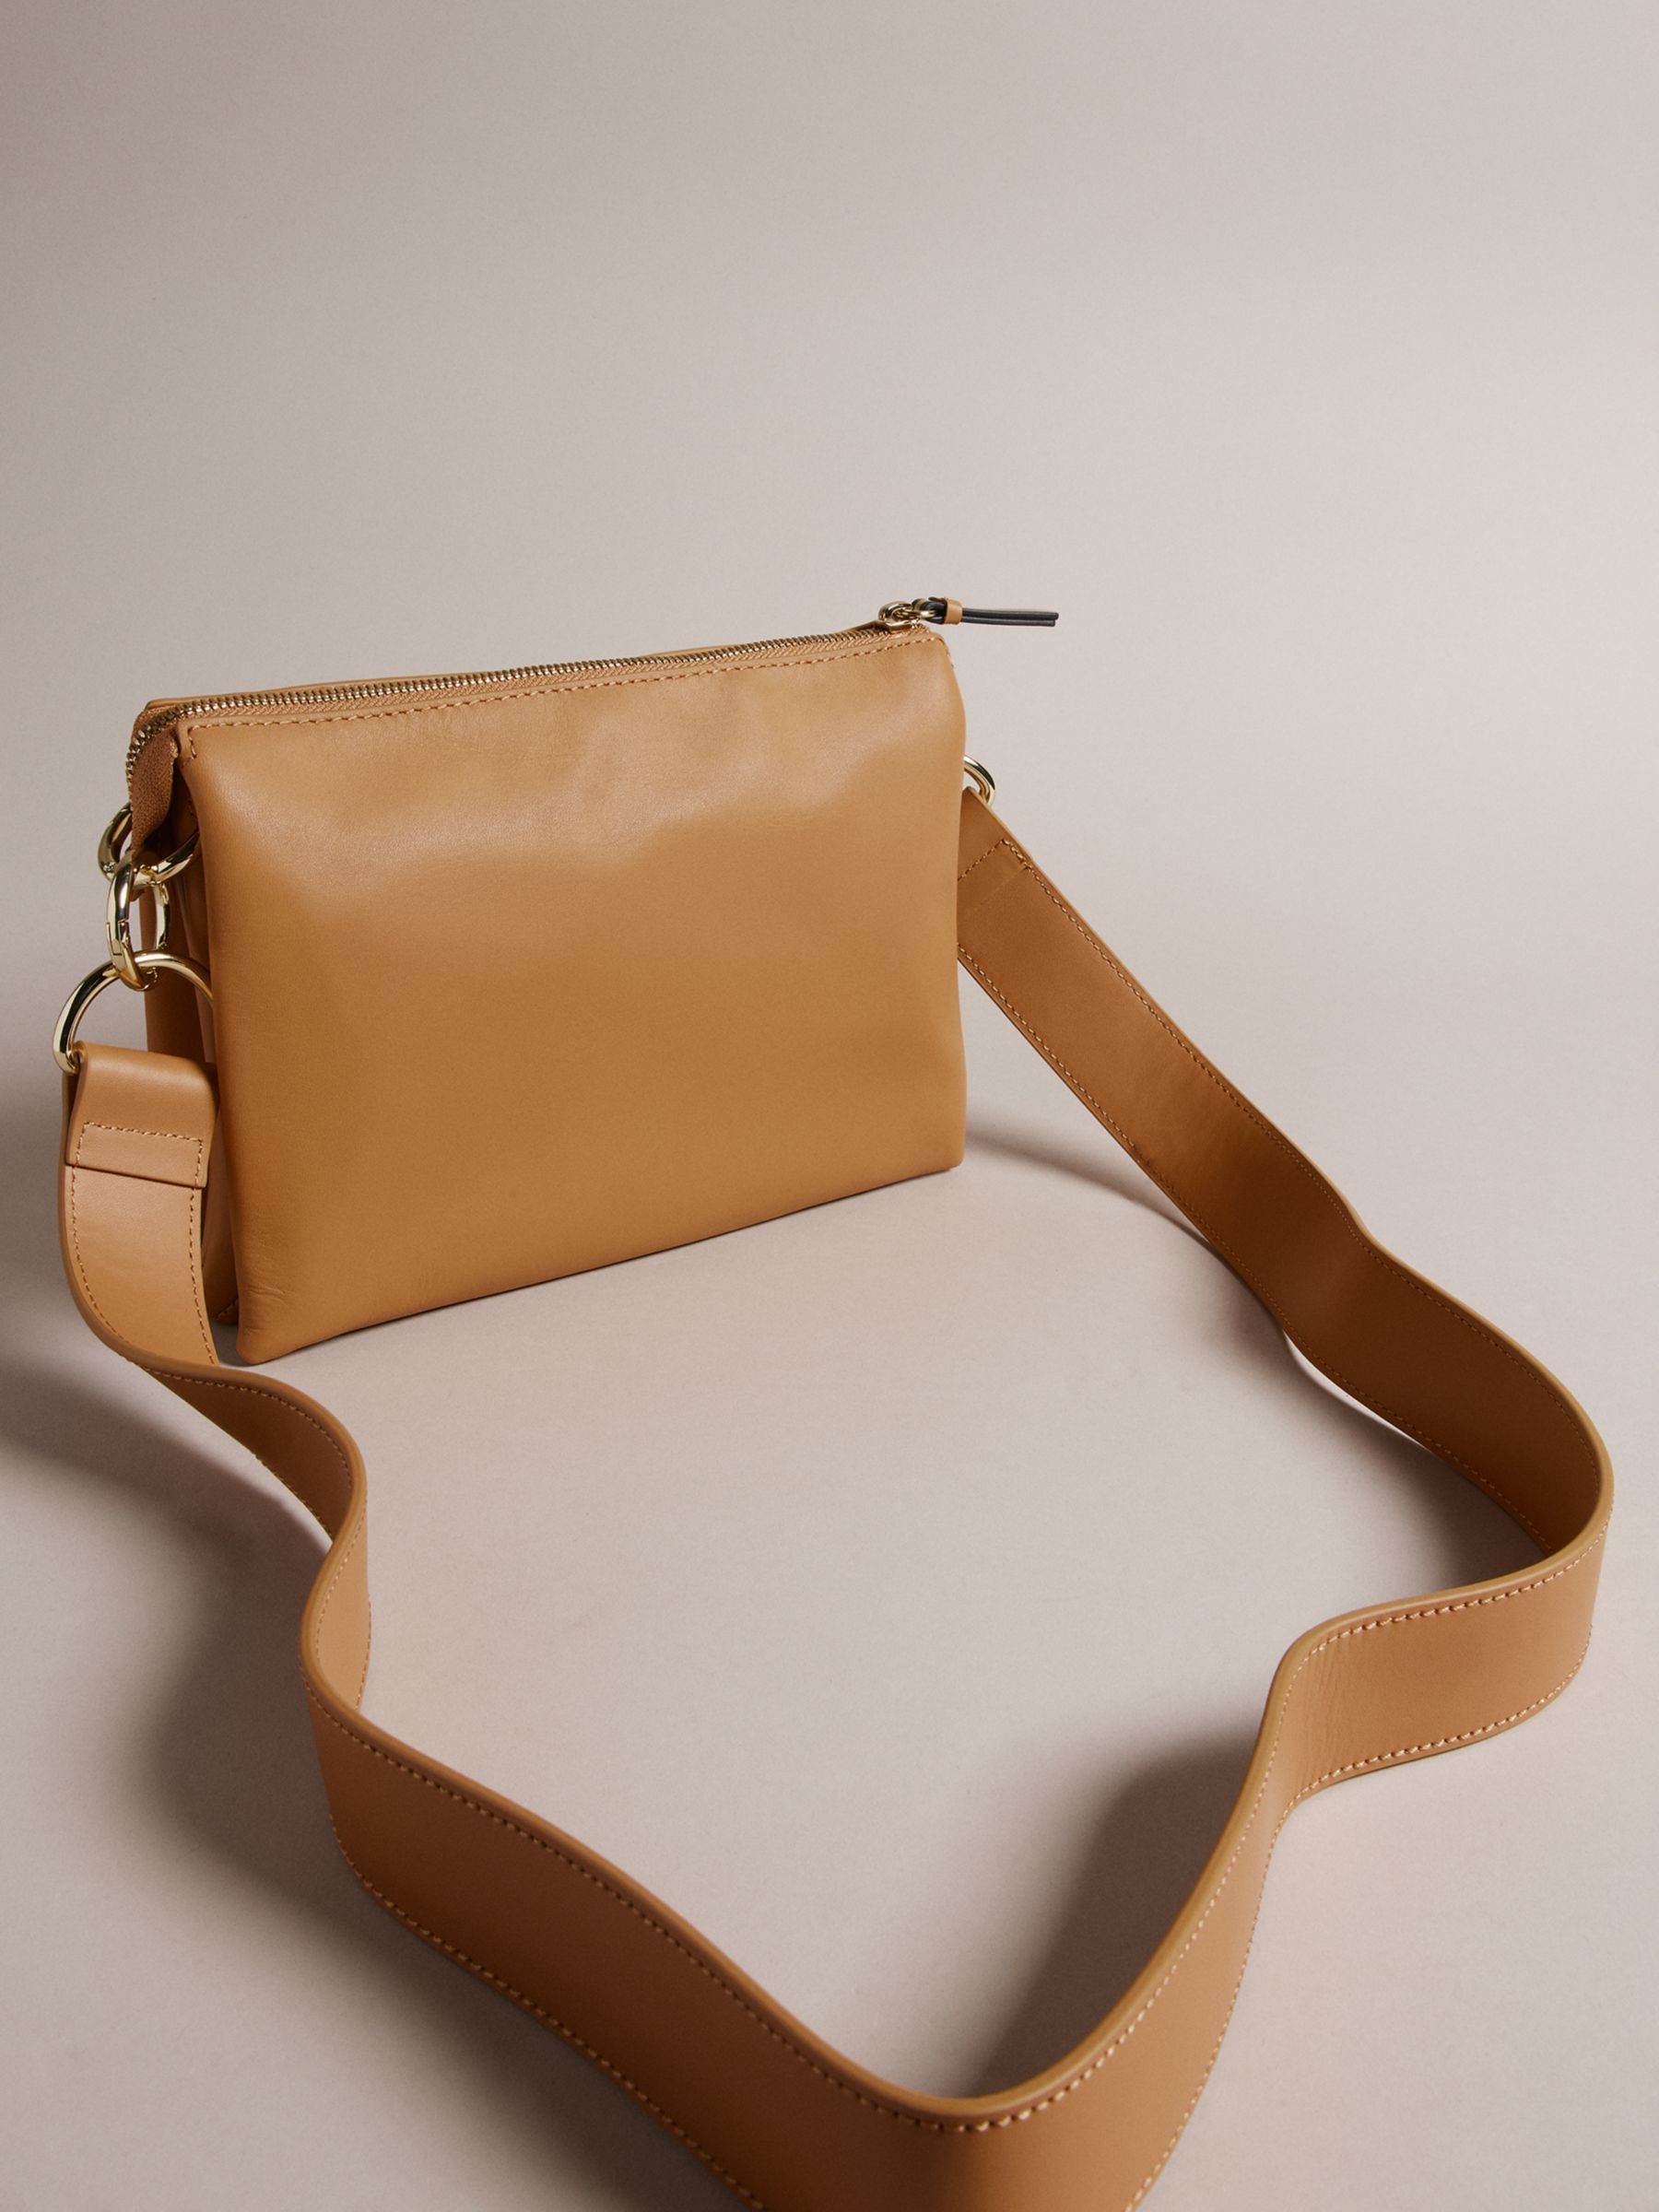 Vintage John Lewis Tan Leather Shoulder Bag With Two Handles -  UK